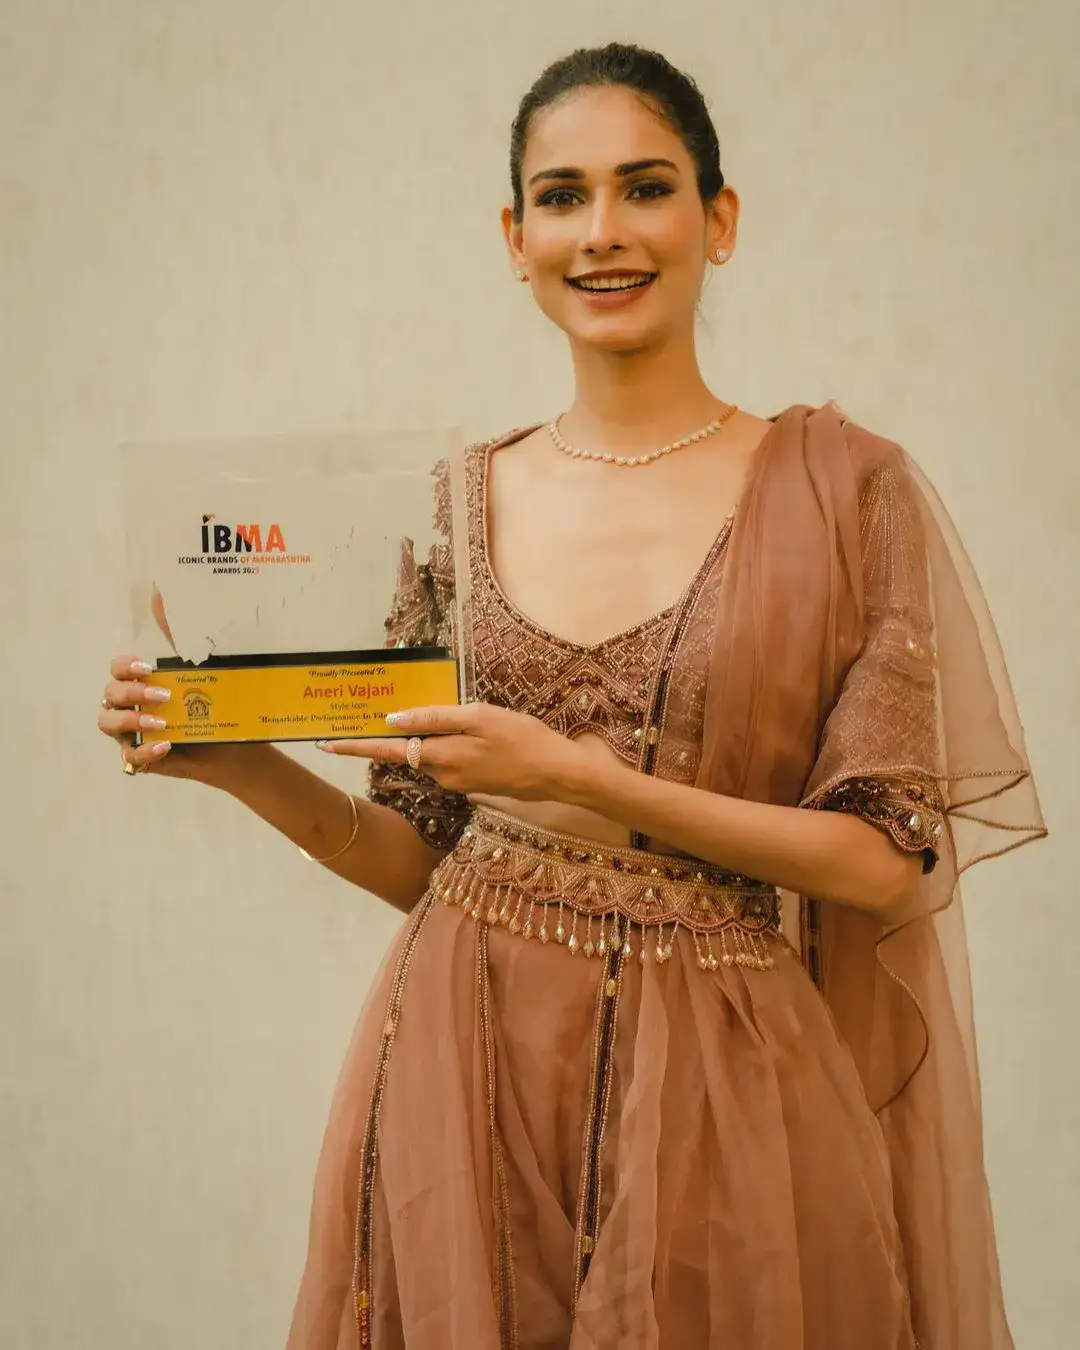 Aneri Vajani was seen at the IBM Awards 2022 in Mumbai